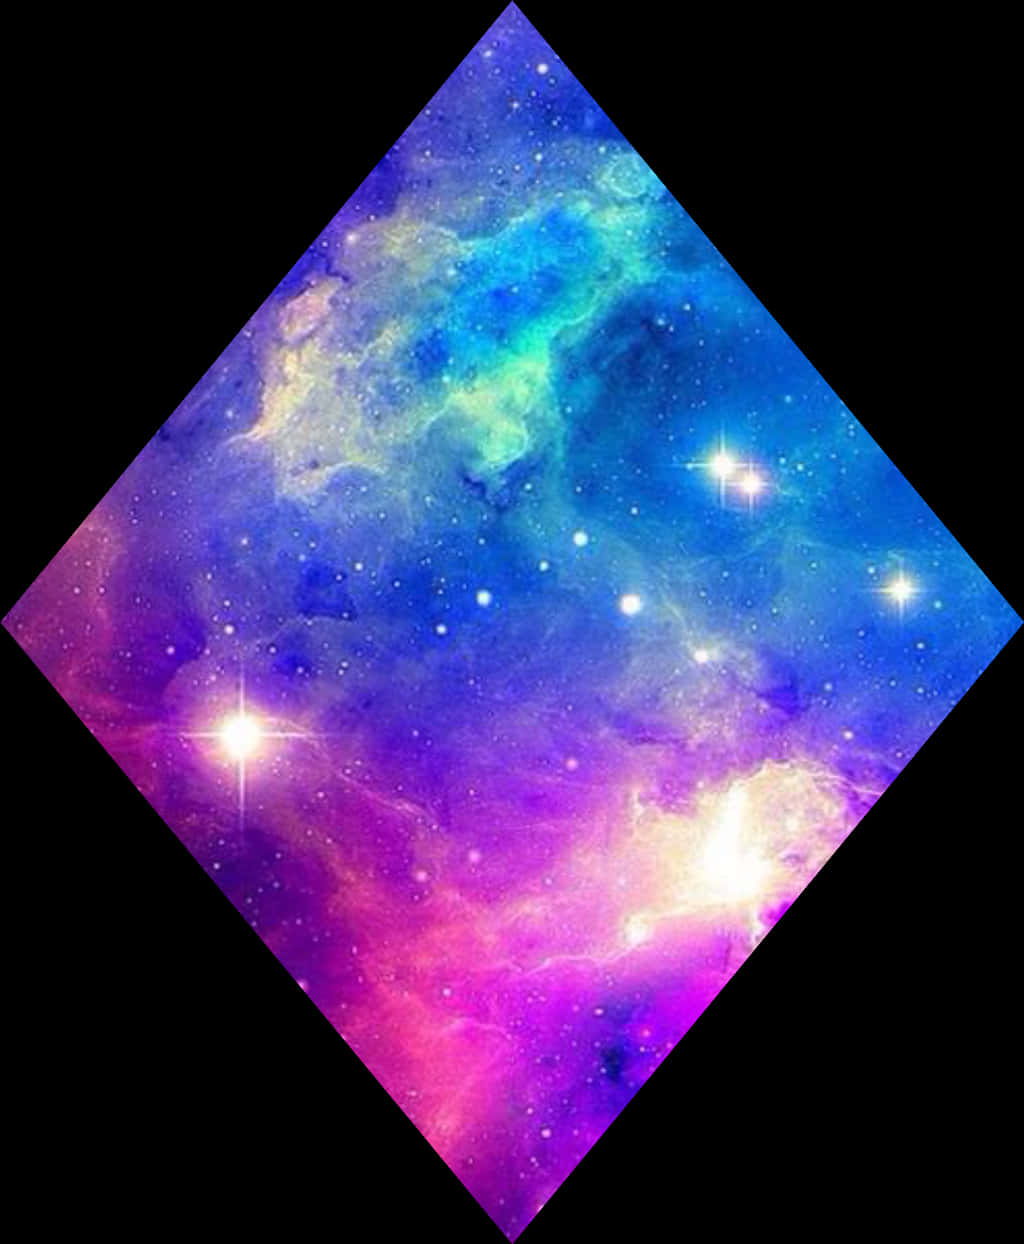 A Diamond Shaped Image Of Stars And Nebula